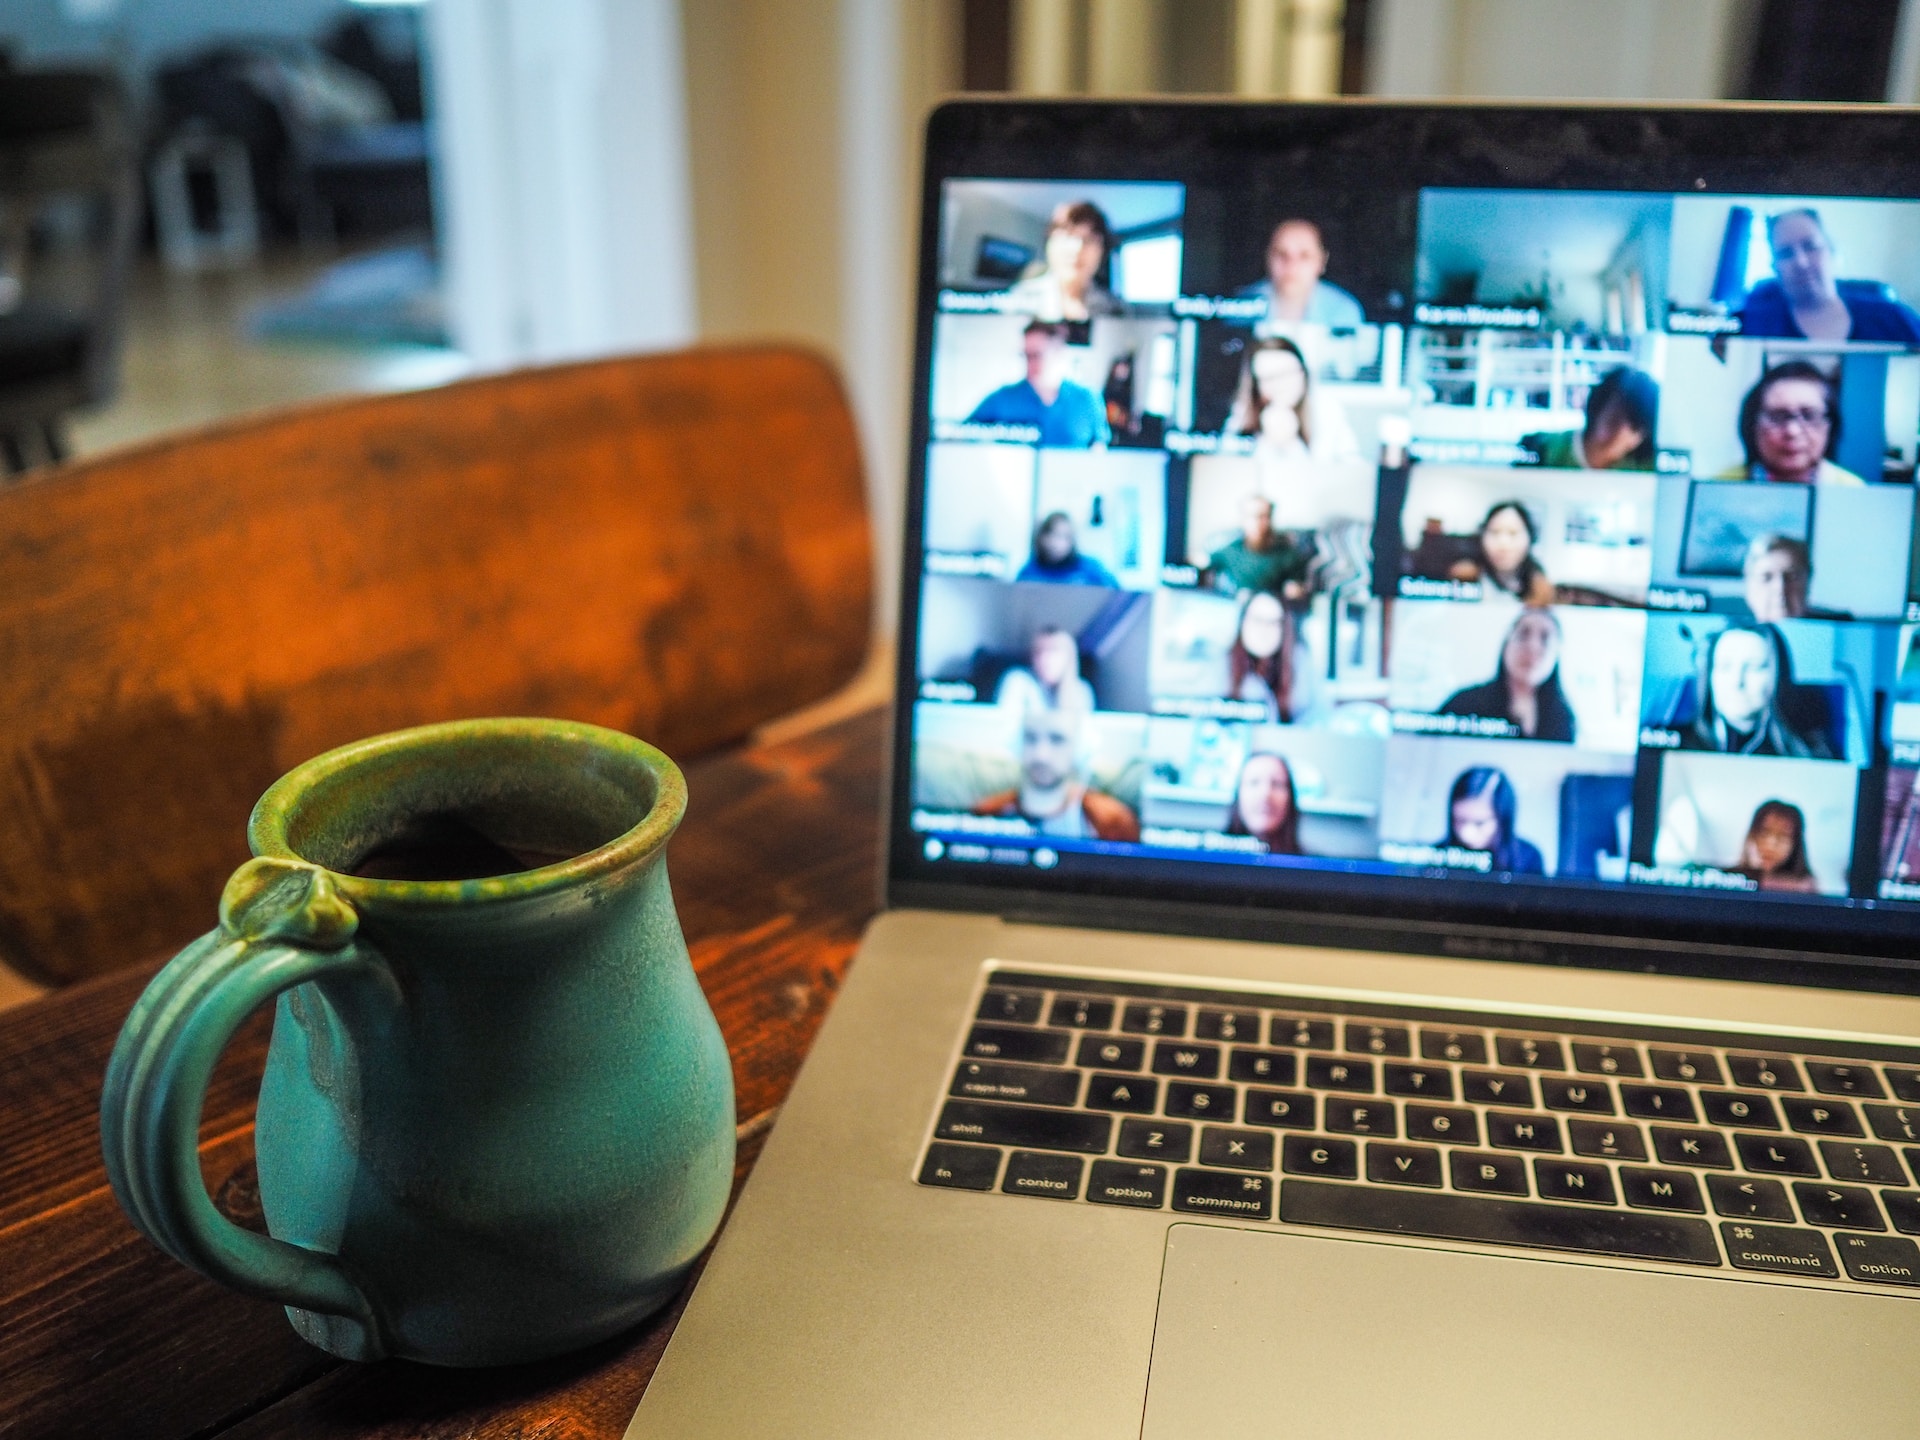 Laptop displaying an online meeting